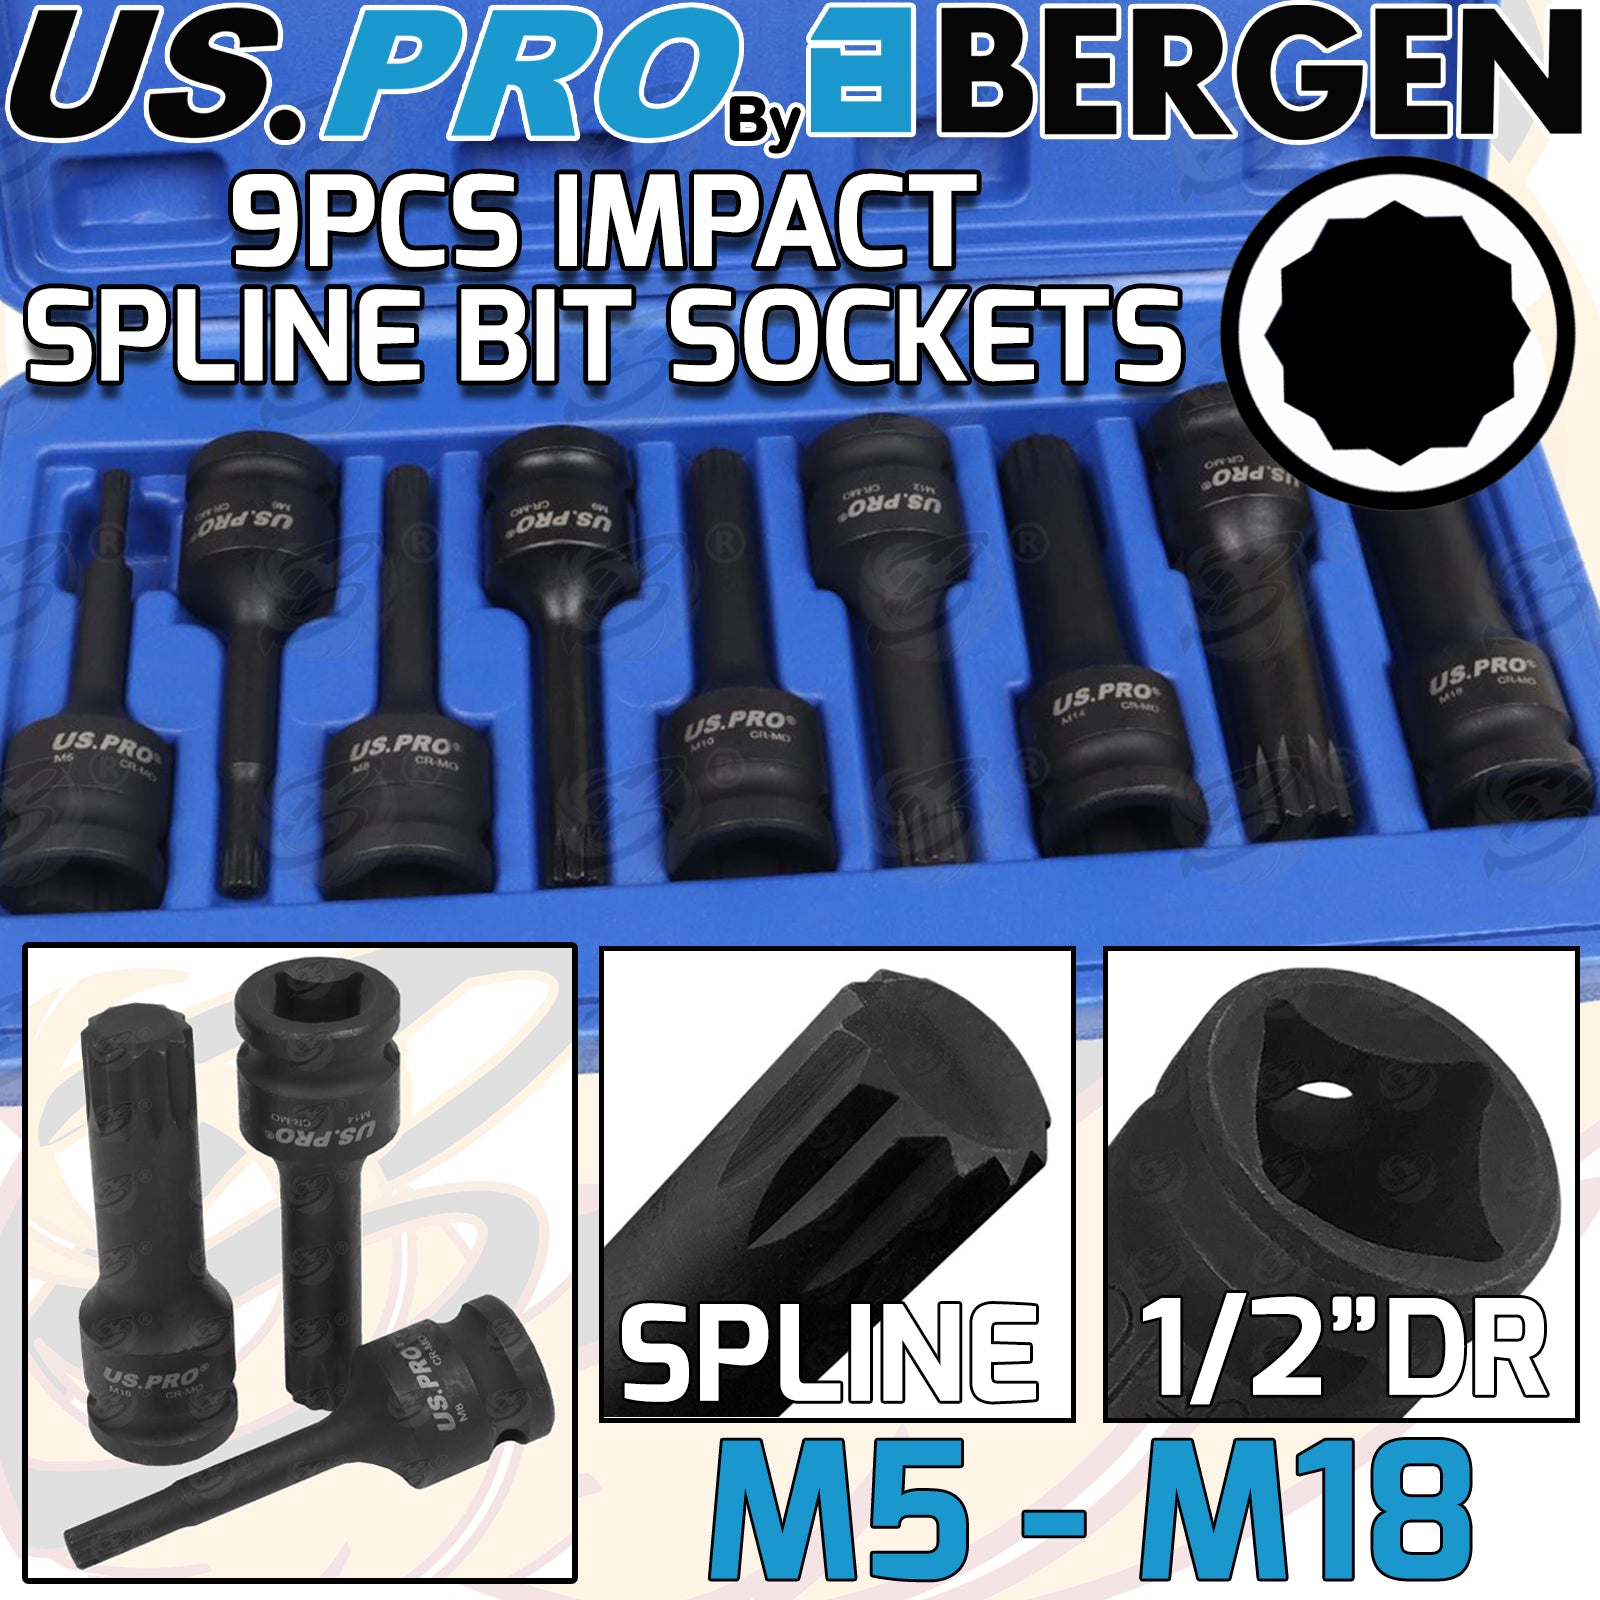 US PRO 9PCS 1/2" DRIVE IMPACT SPLINE BIT SOCKETS M5 - M18